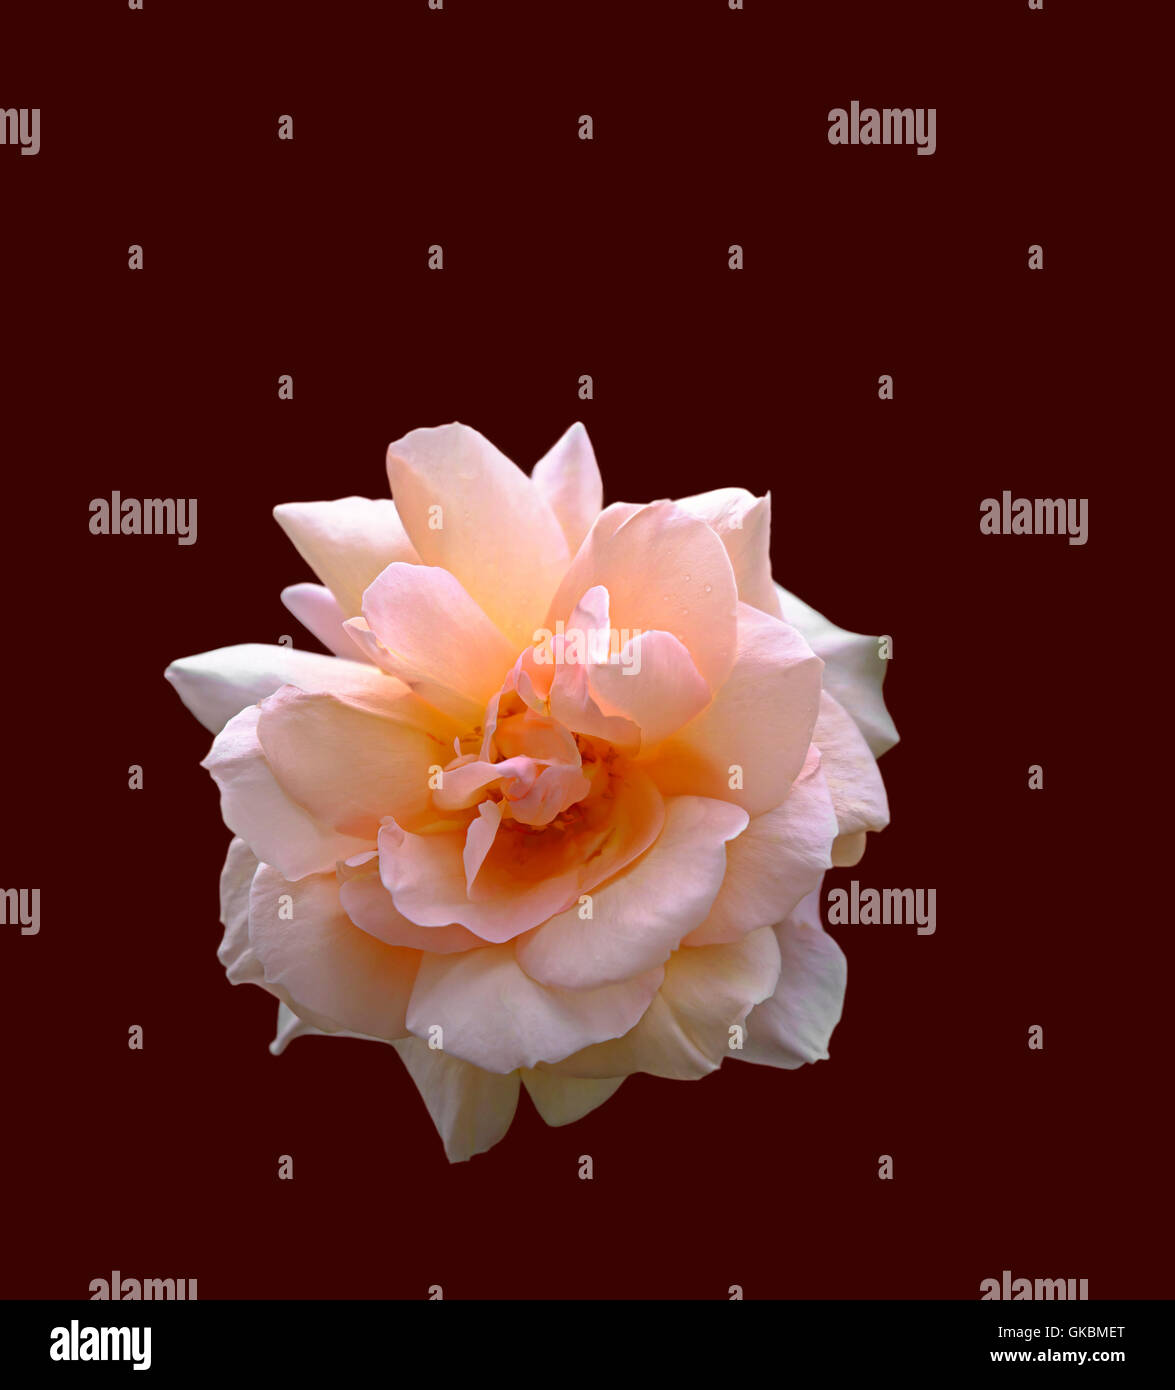 Eine schöne rosa Rose als ein Ausschnitt auf dunkelroten Hintergrund dargestellt Stockfoto